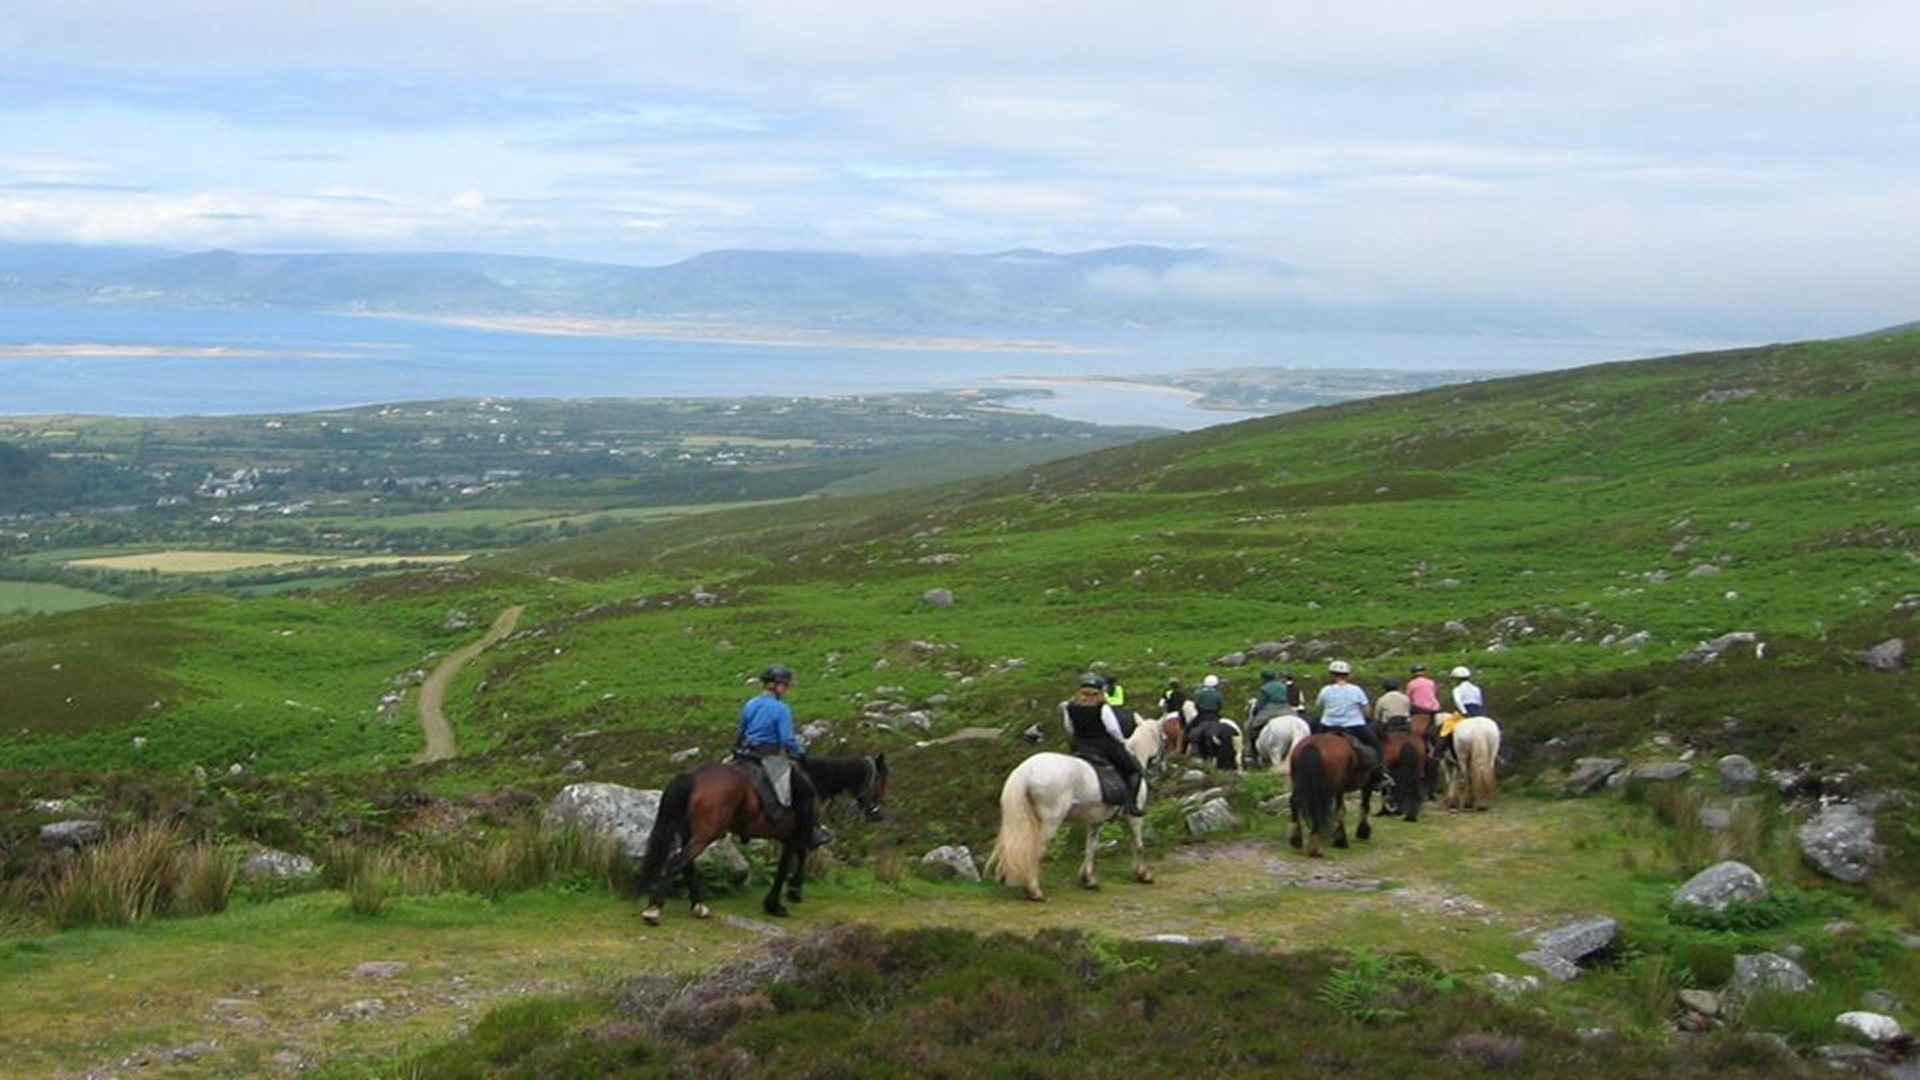 Horse Riding Vacations kerry Ireland